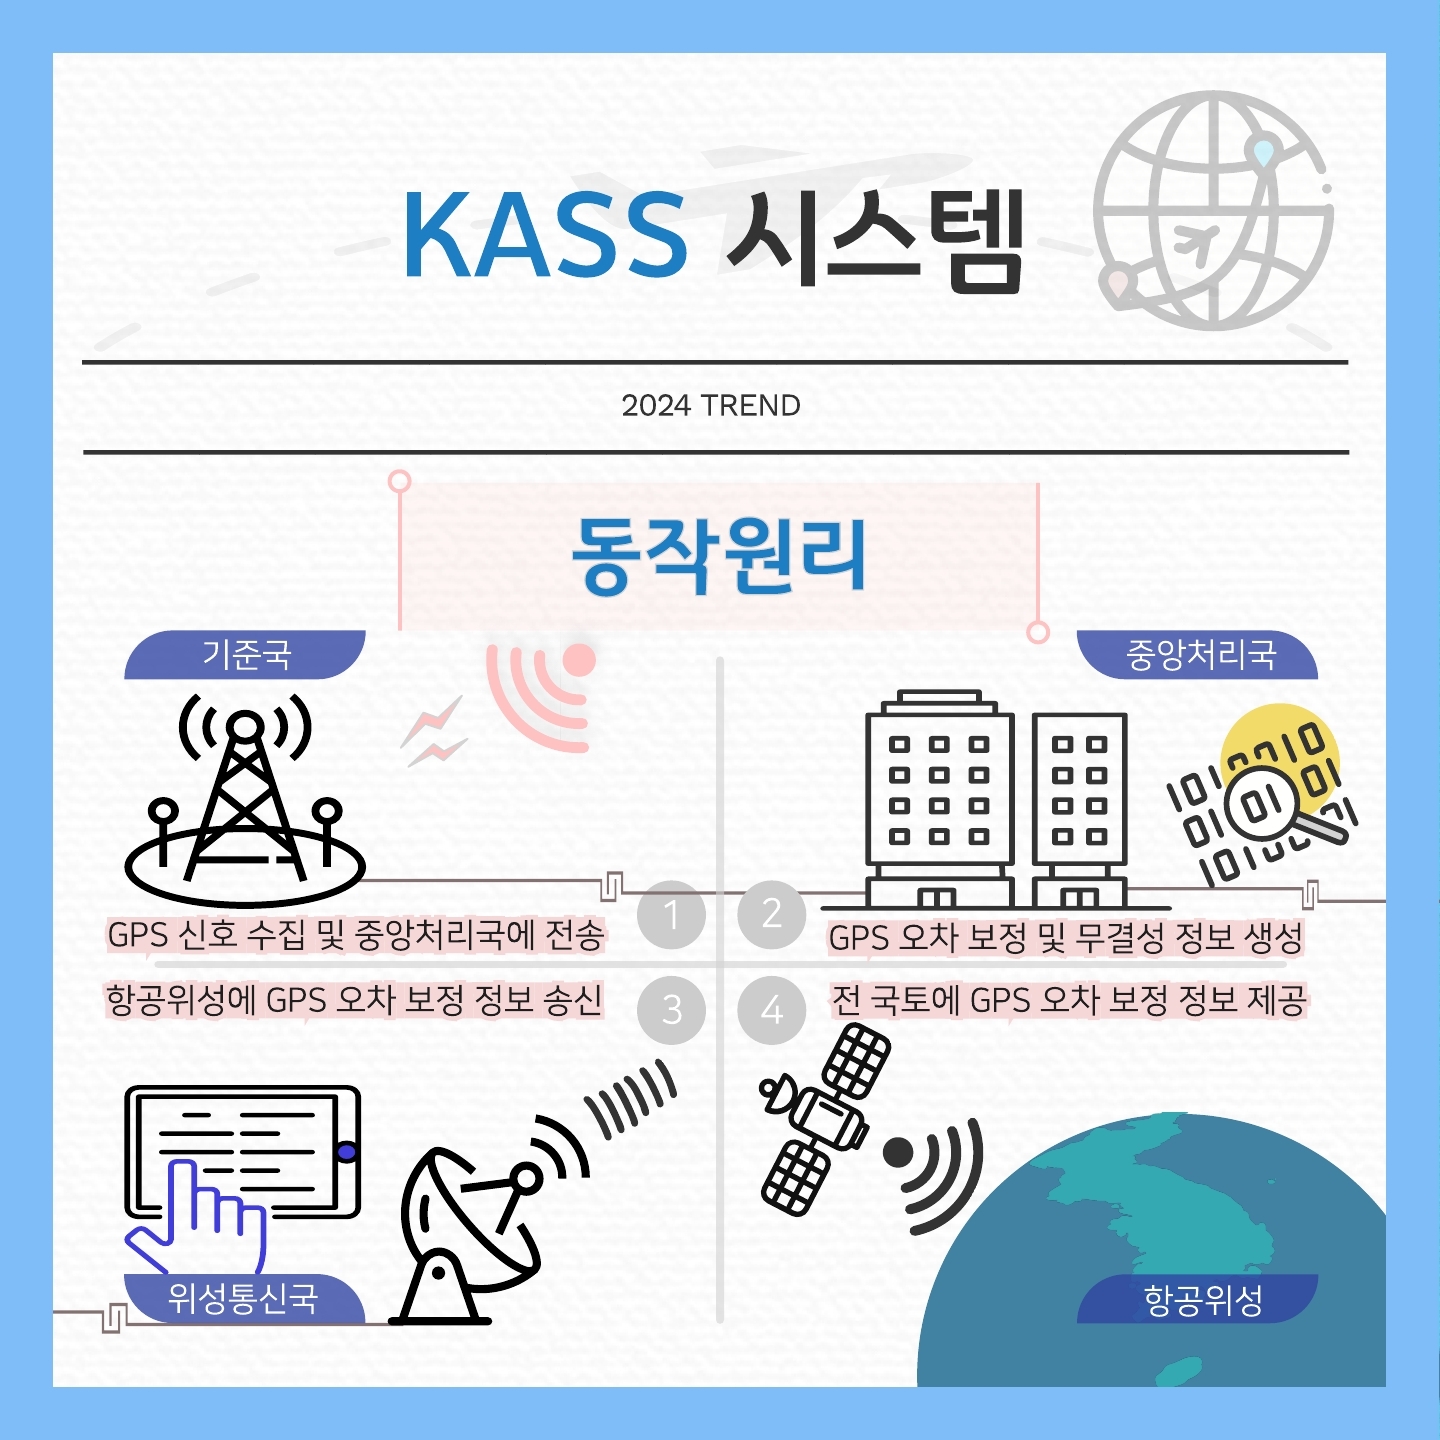 KASS 시스템

동작원리

1. 기준국 : GPS 신호 수집 및 중앙처리국에 전송
2. 중앙처리국 : GPS 오차 보정 및 무결성 정보 생성
3. 위성통신국 : 항공위성에 GPS 오차 보정 정보 송신
4. 항공위성 : 전 국토에 GPS 오차 보정 정보 제공